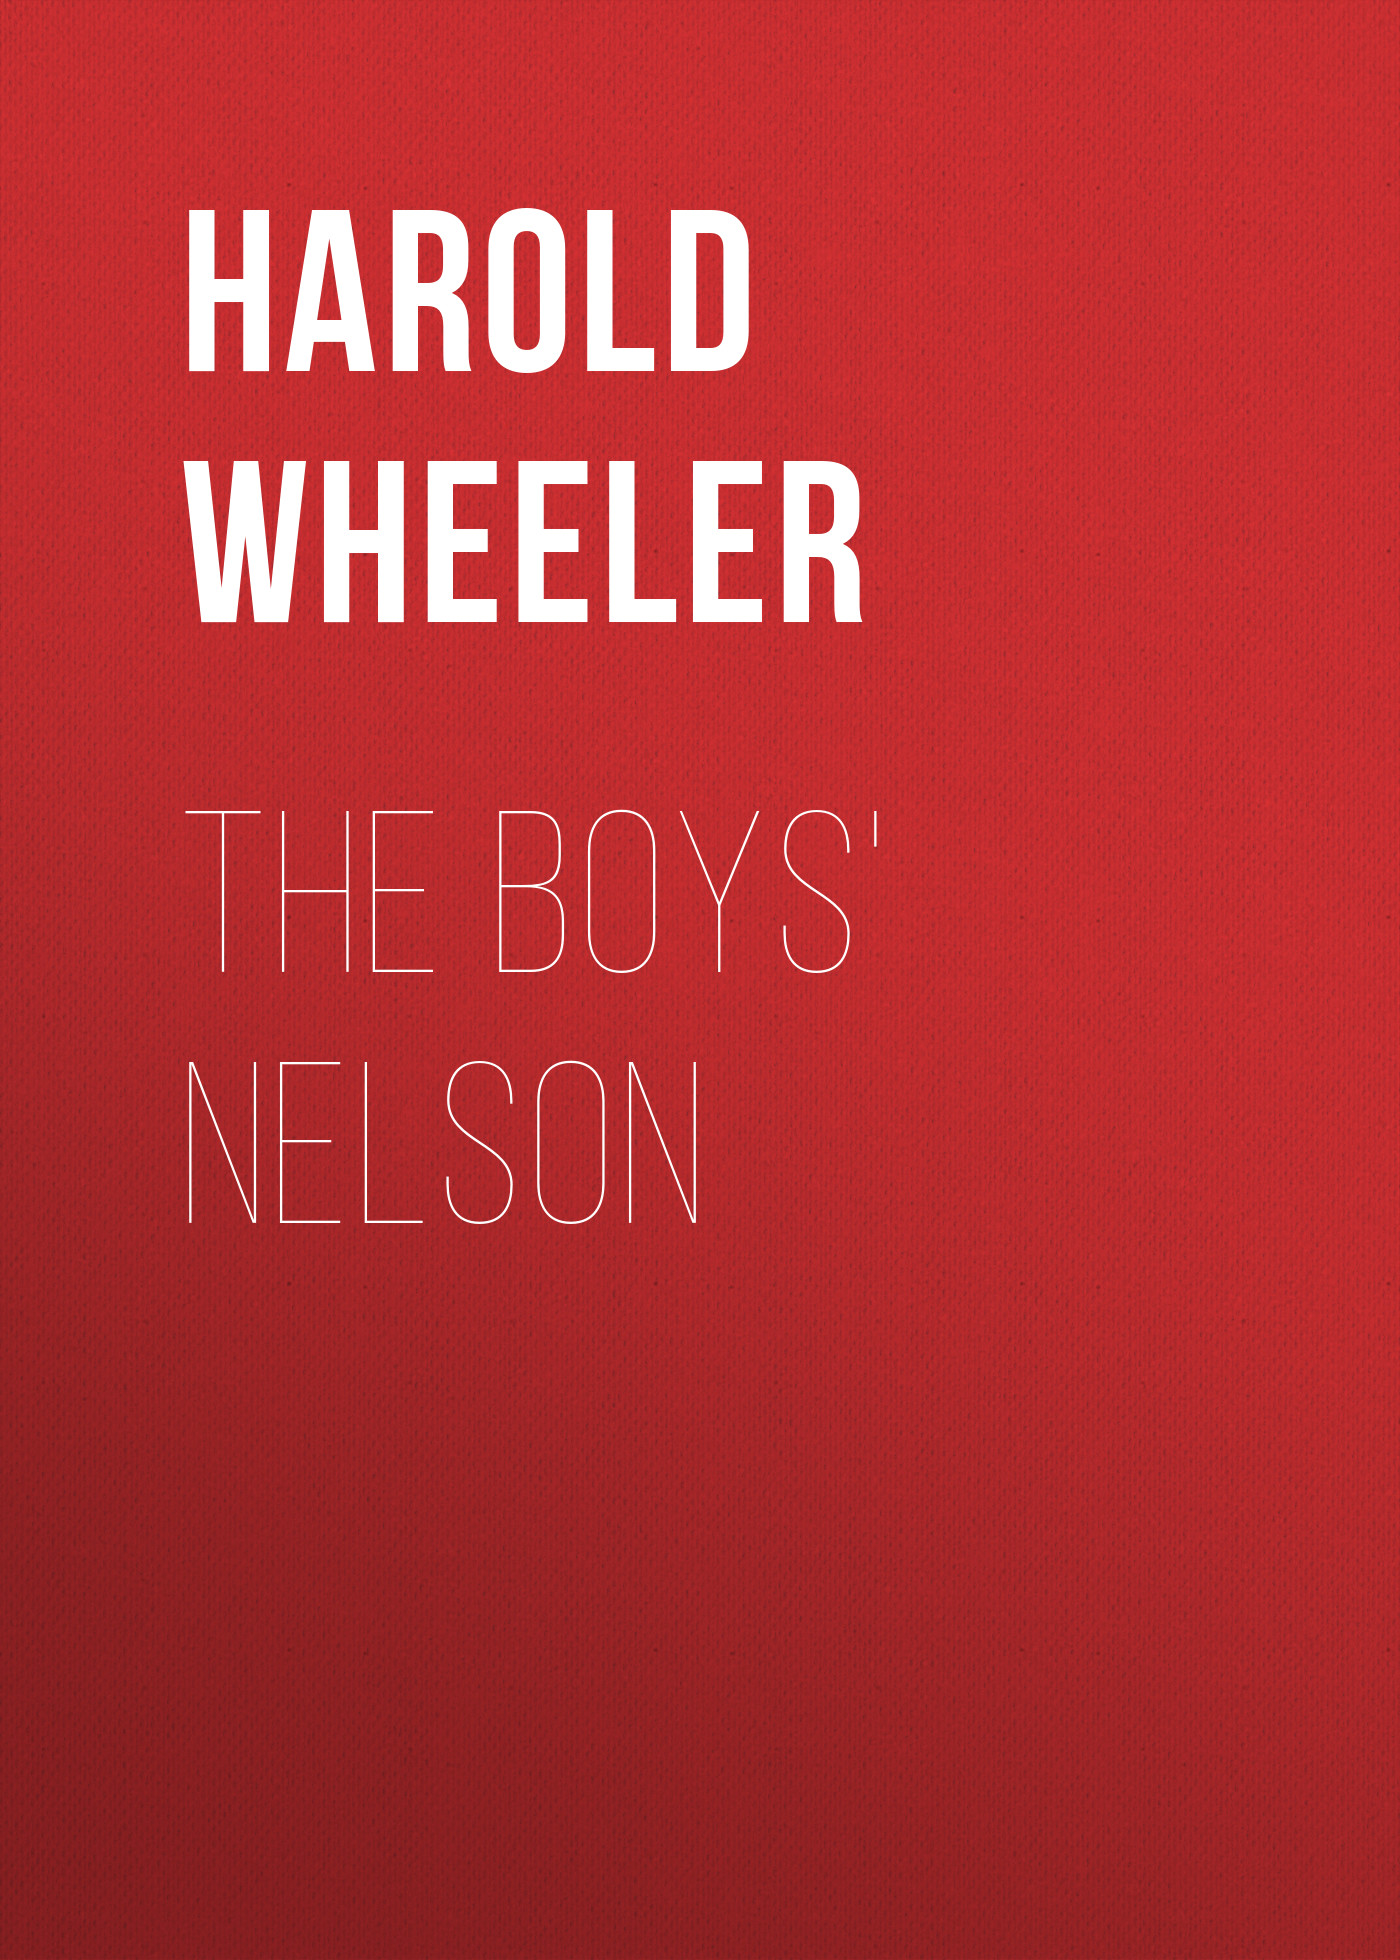 Книга The Boys' Nelson из серии , созданная Harold Wheeler, может относится к жанру Зарубежная классика, История, Зарубежная образовательная литература, Зарубежная старинная литература. Стоимость электронной книги The Boys' Nelson с идентификатором 34337746 составляет 0 руб.